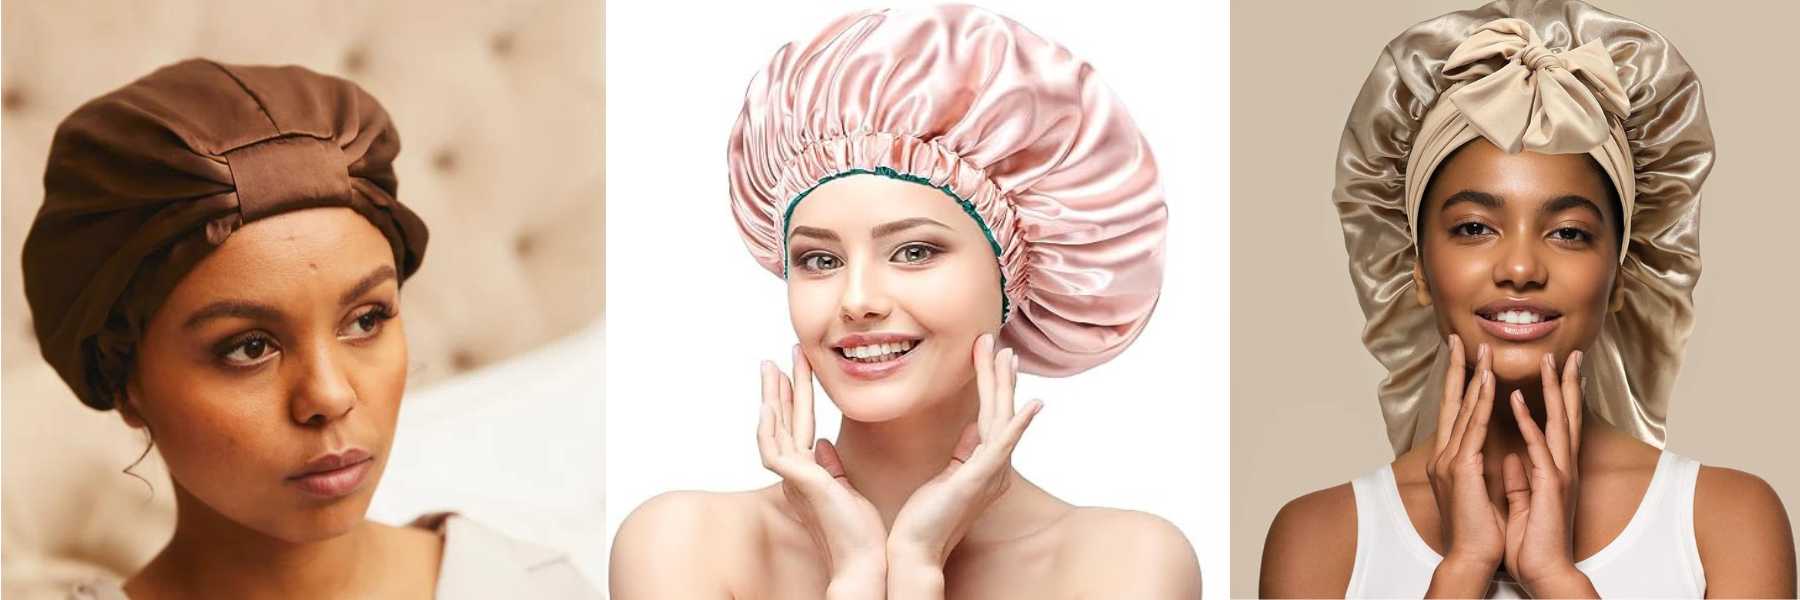 Seidensatin-Haube | 9 Tipps gegen krauses Haar, die funktionieren | INDISHA